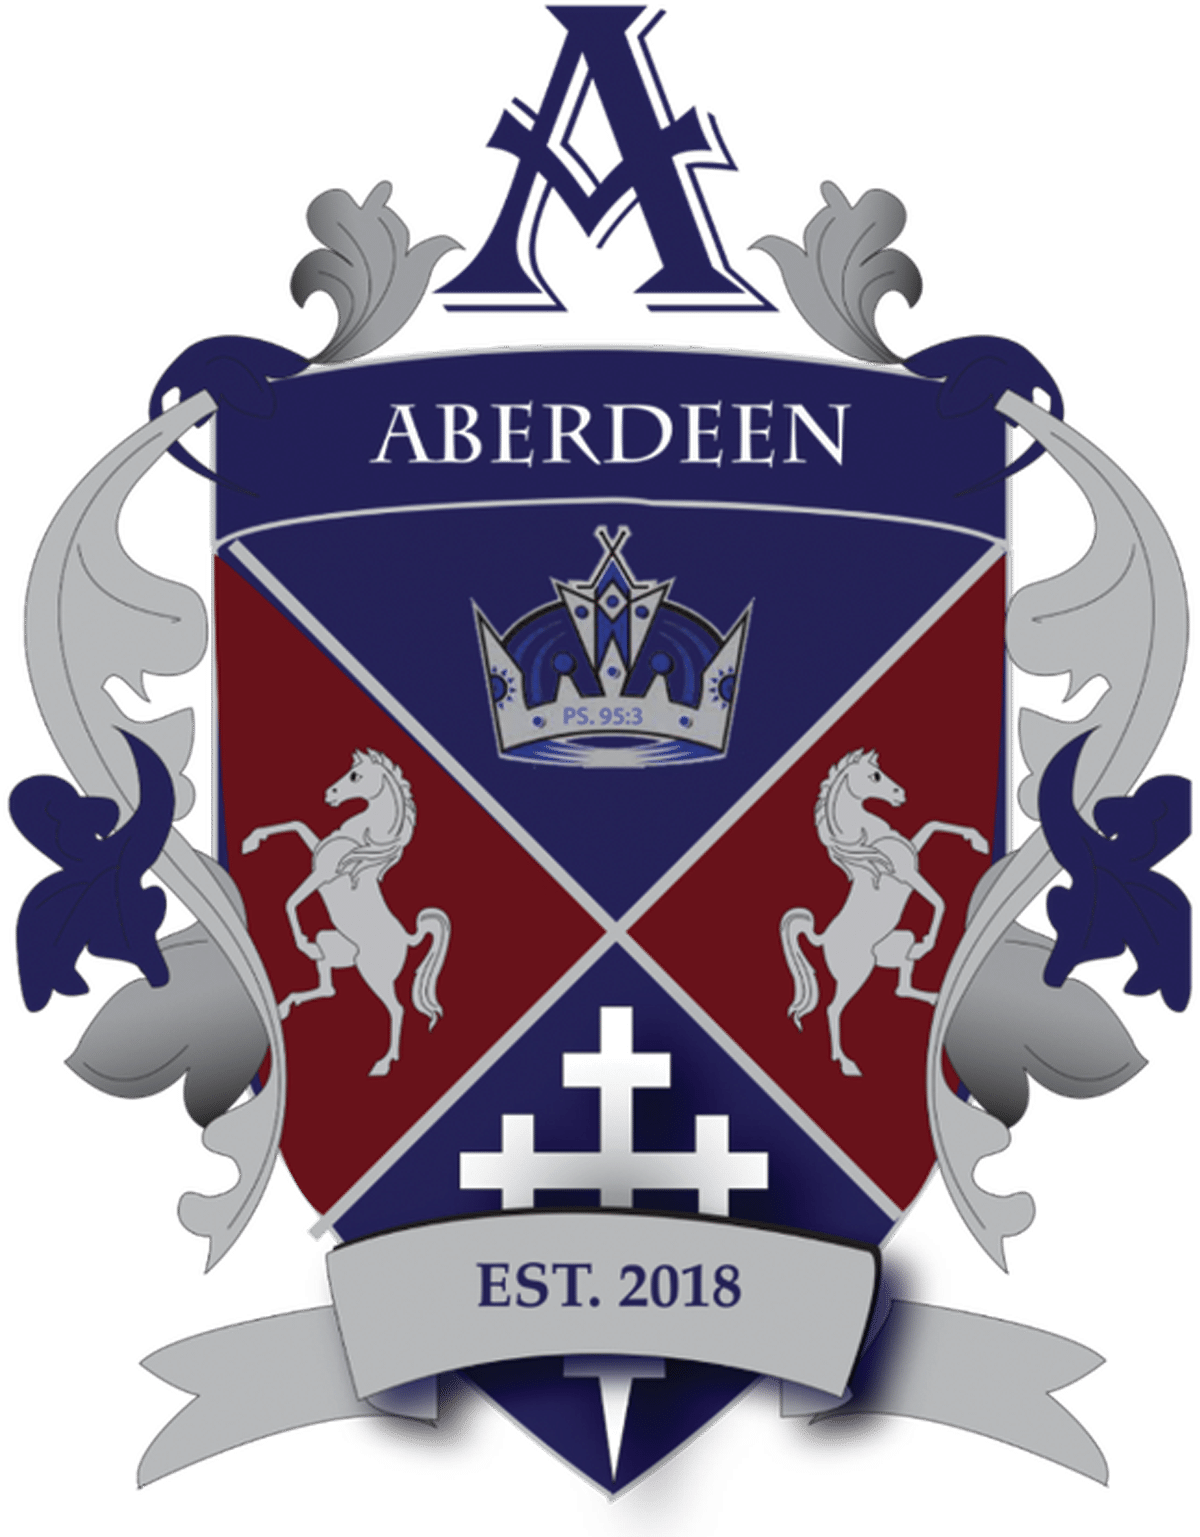 Aberdeen high school crest.